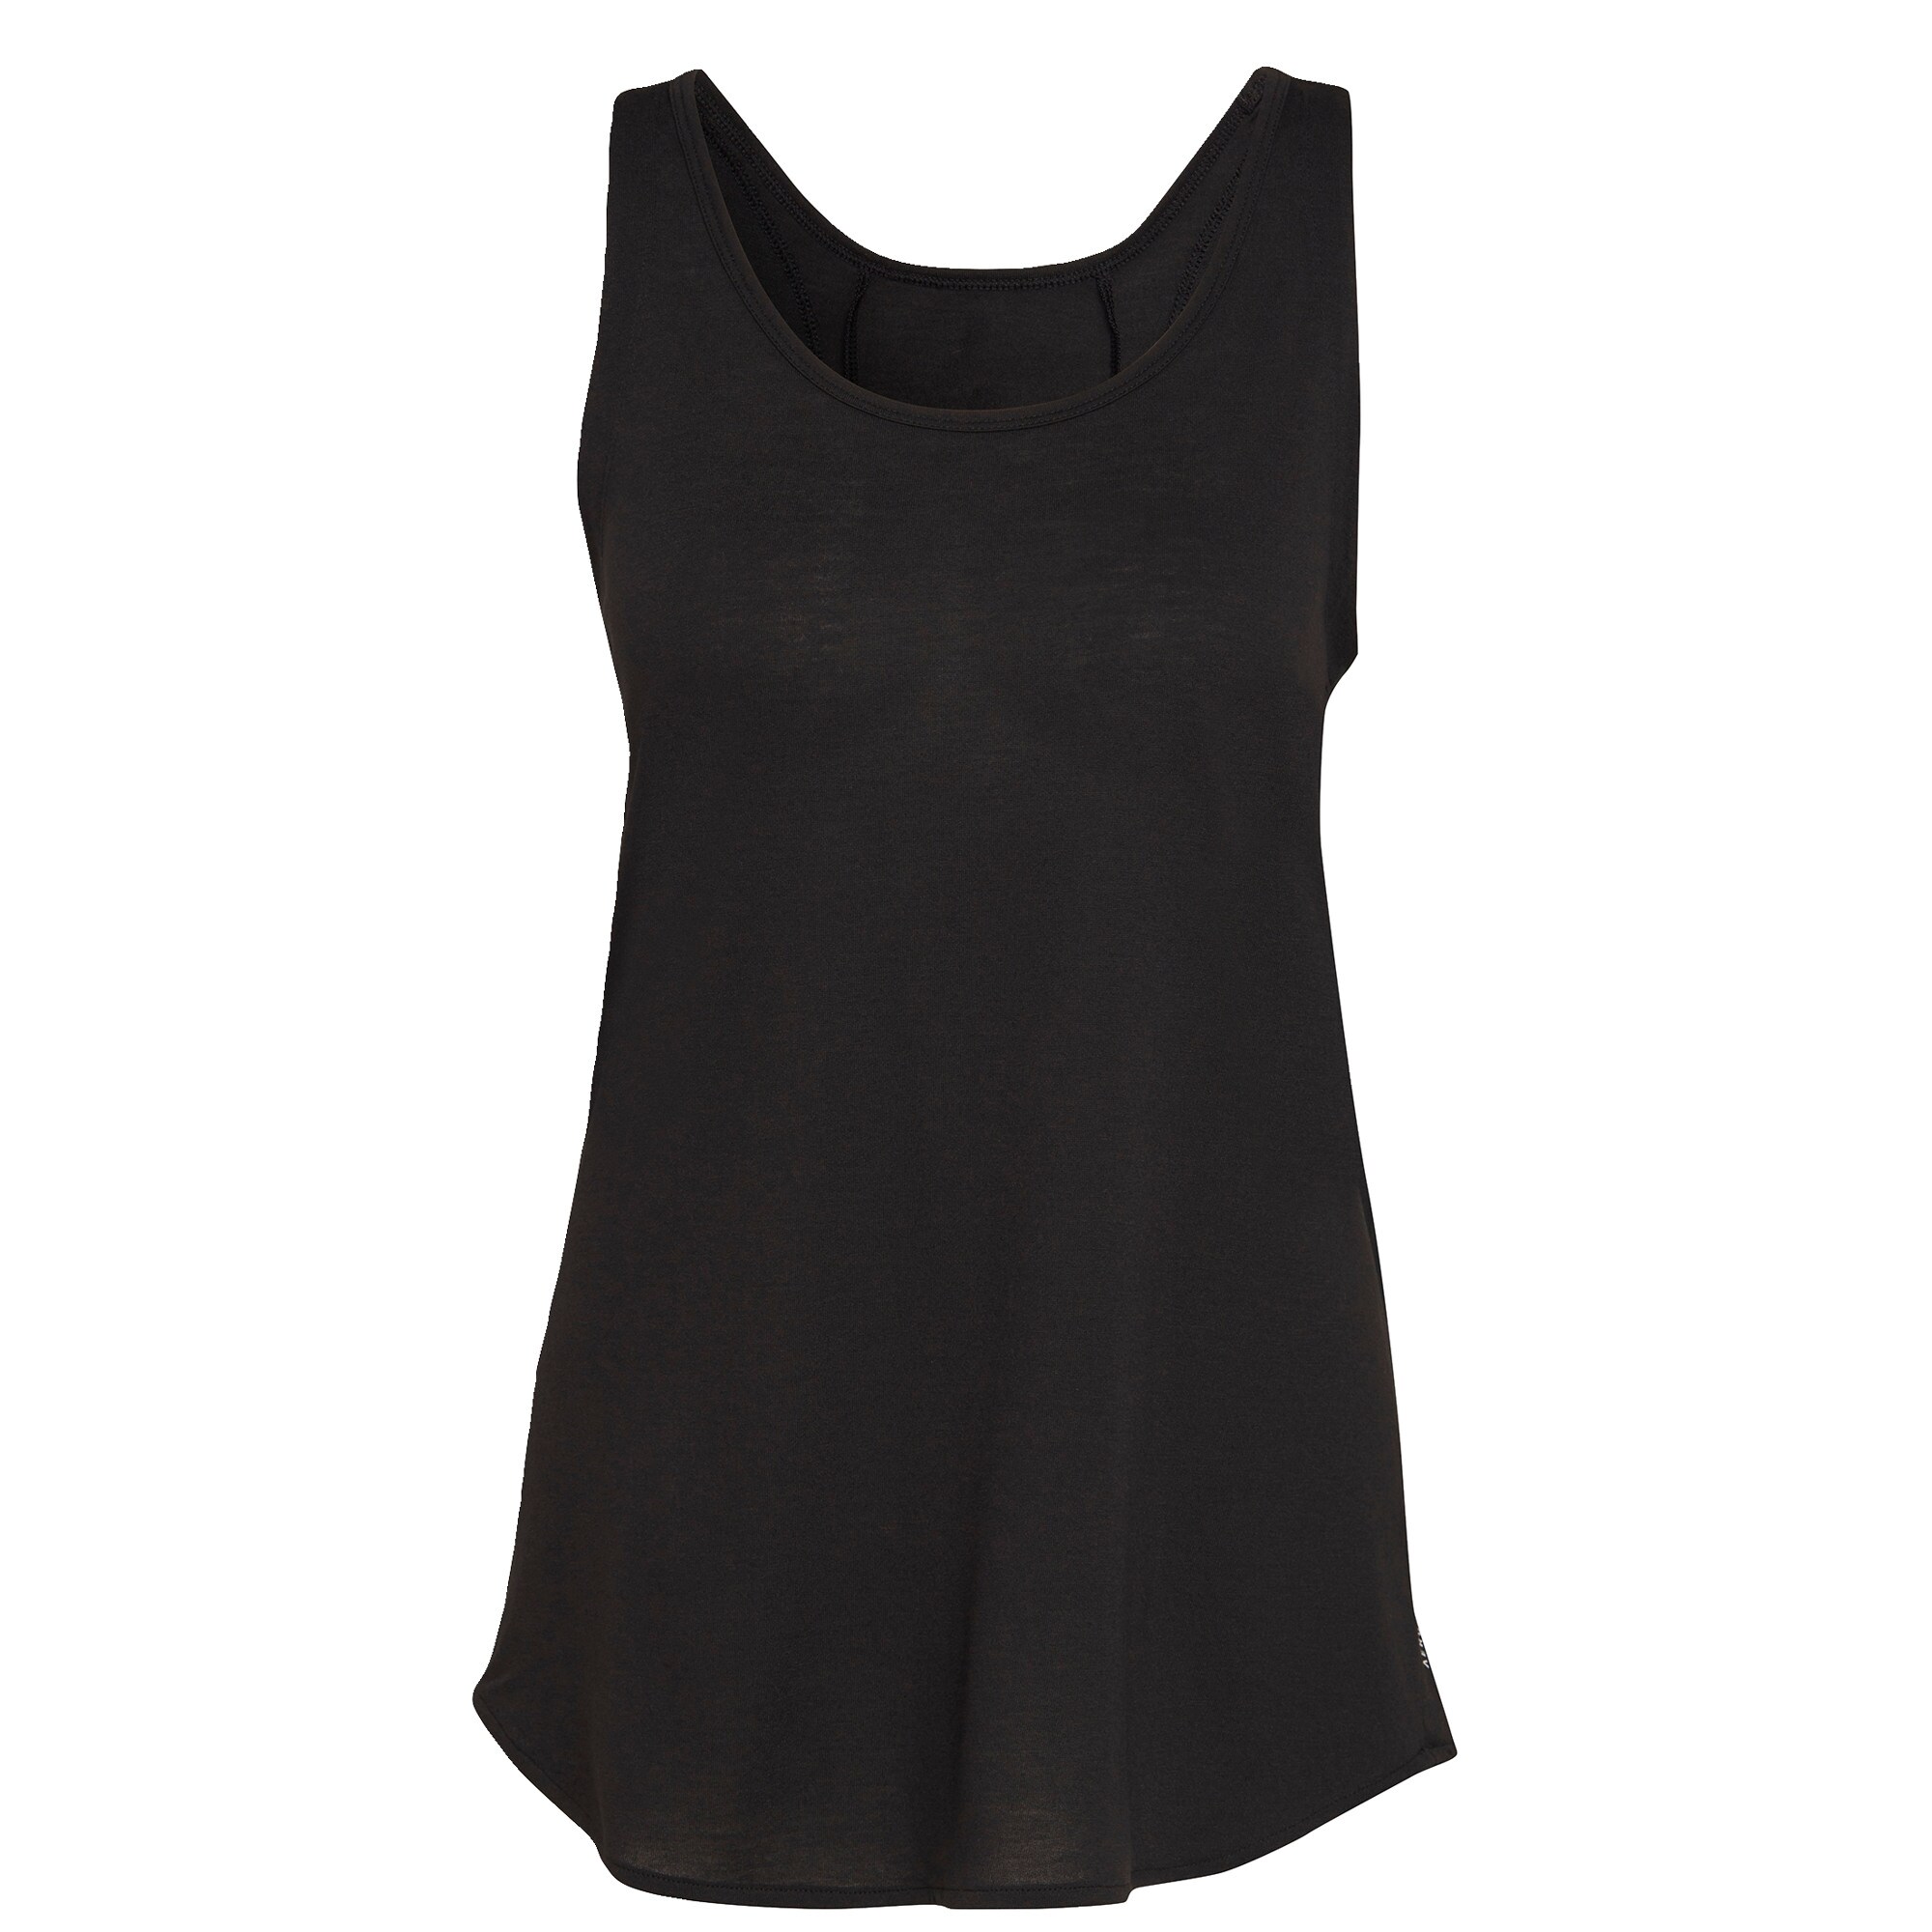 ADIDAS PERFORMANCE Sportiniai marškinėliai be rankovių 'Karlie Kloss'  juoda / tamsiai pilka